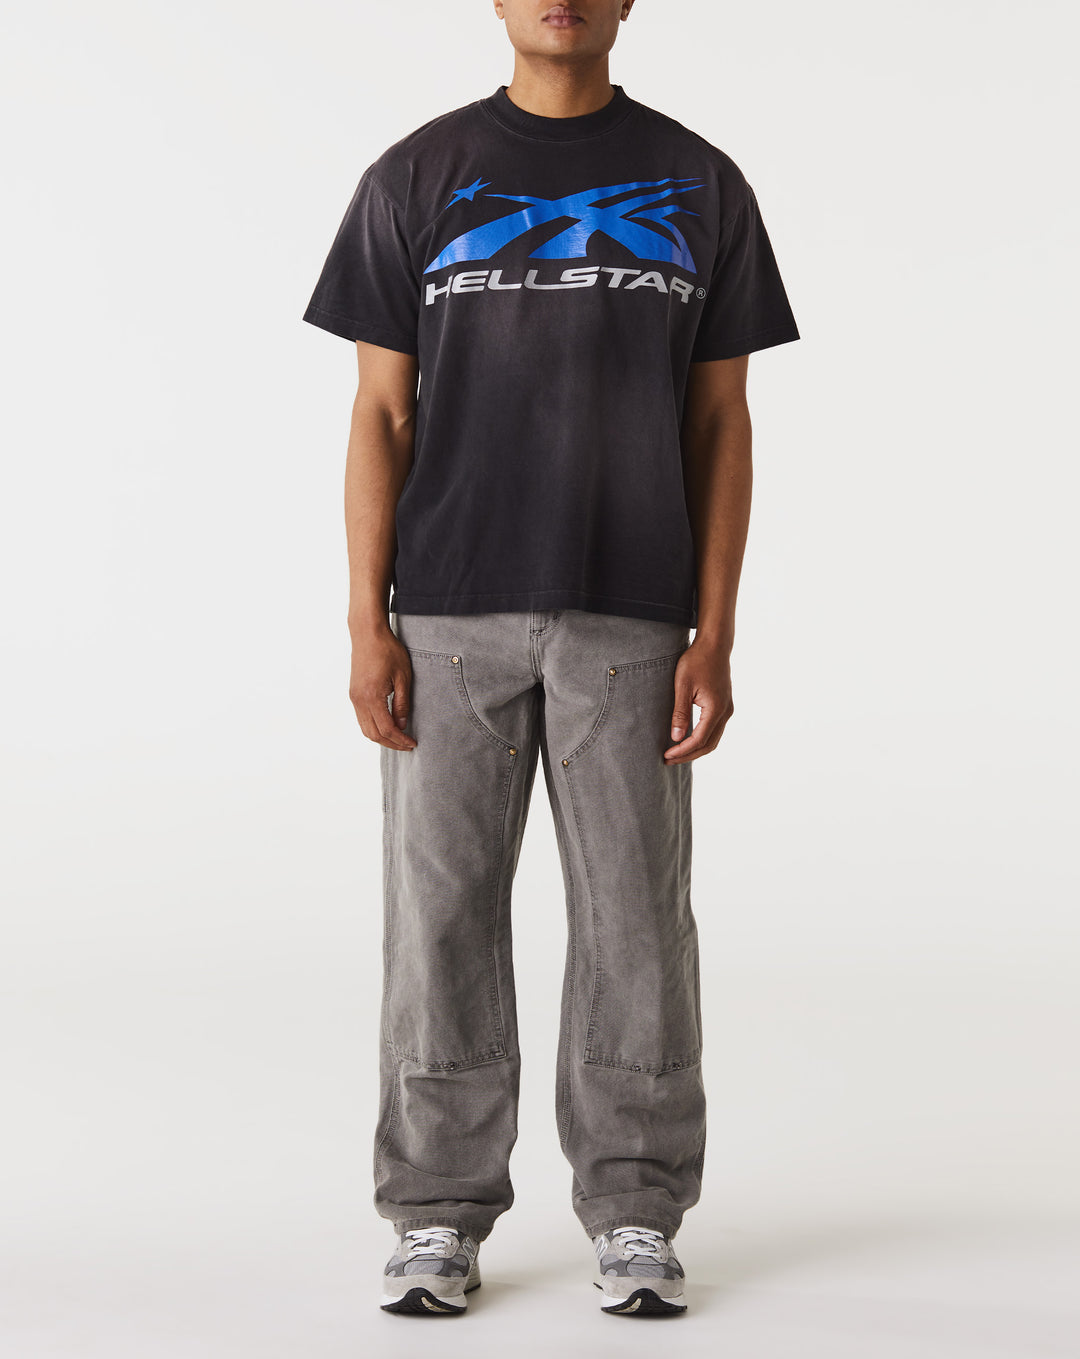 Hellstar Gel Sport Logo T-Shirt  - Cheap Urlfreeze Jordan outlet